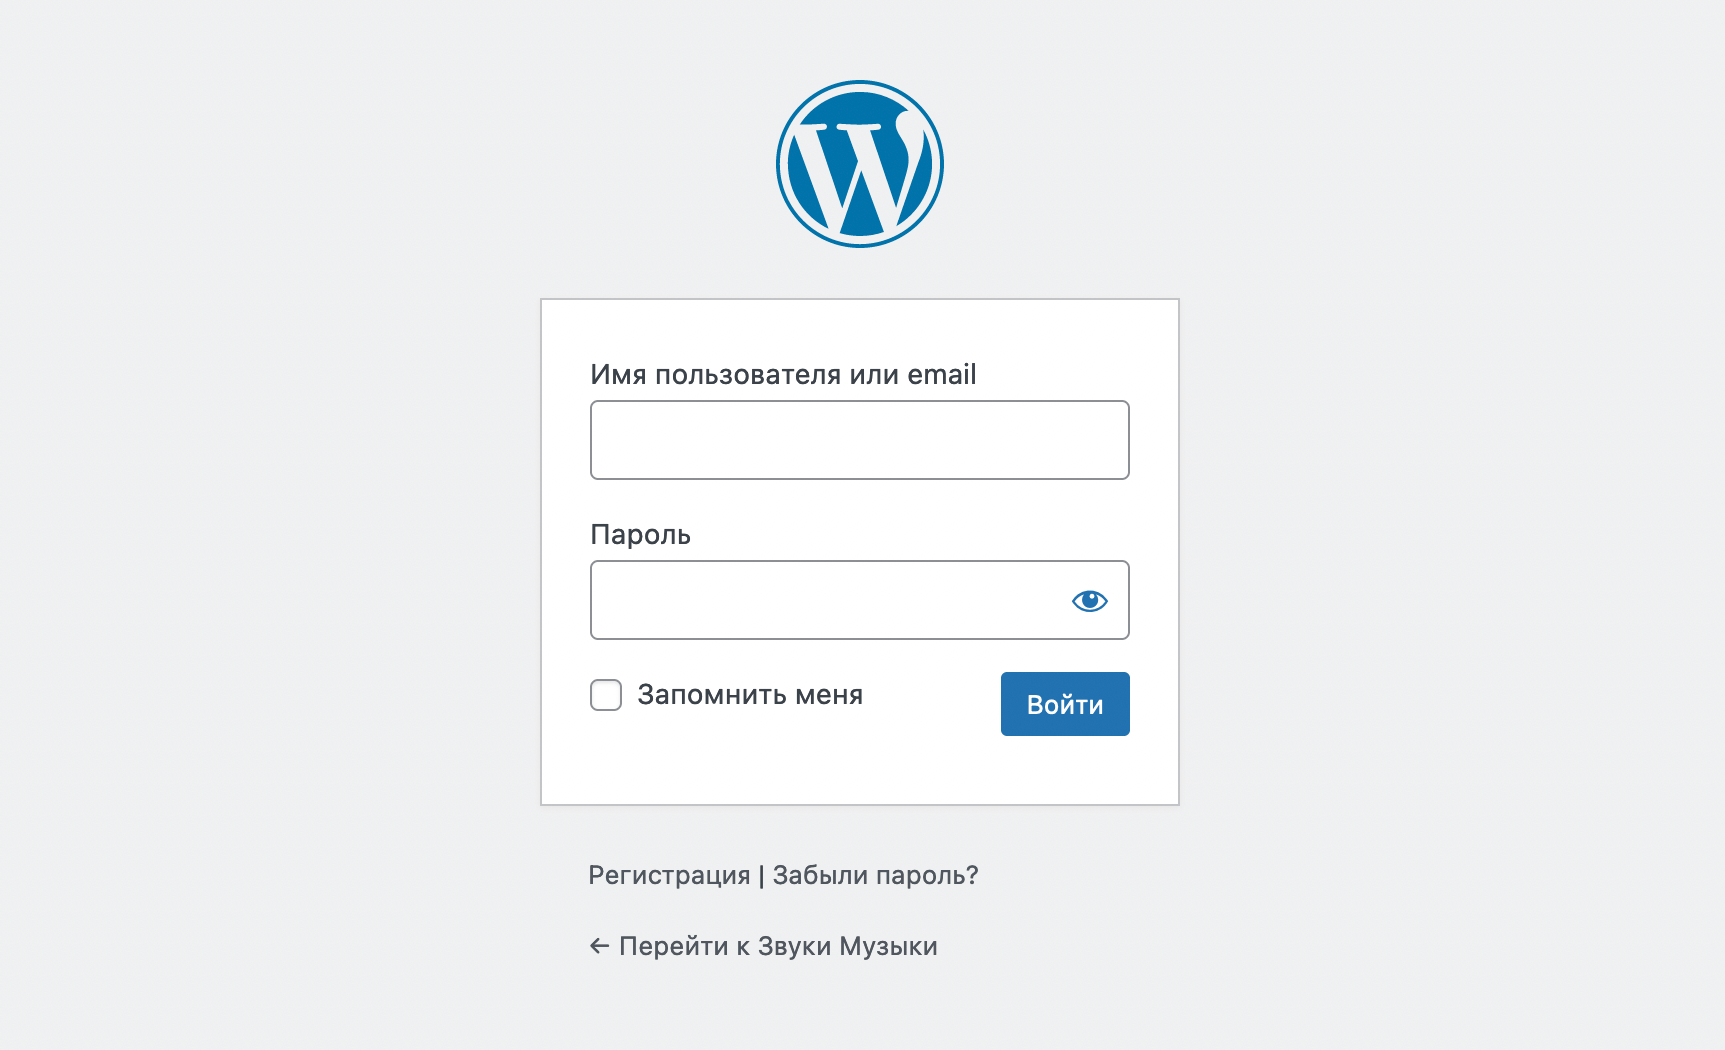 Страница входа в консоль WordPress, когда в опции «Членство» стоит галочка